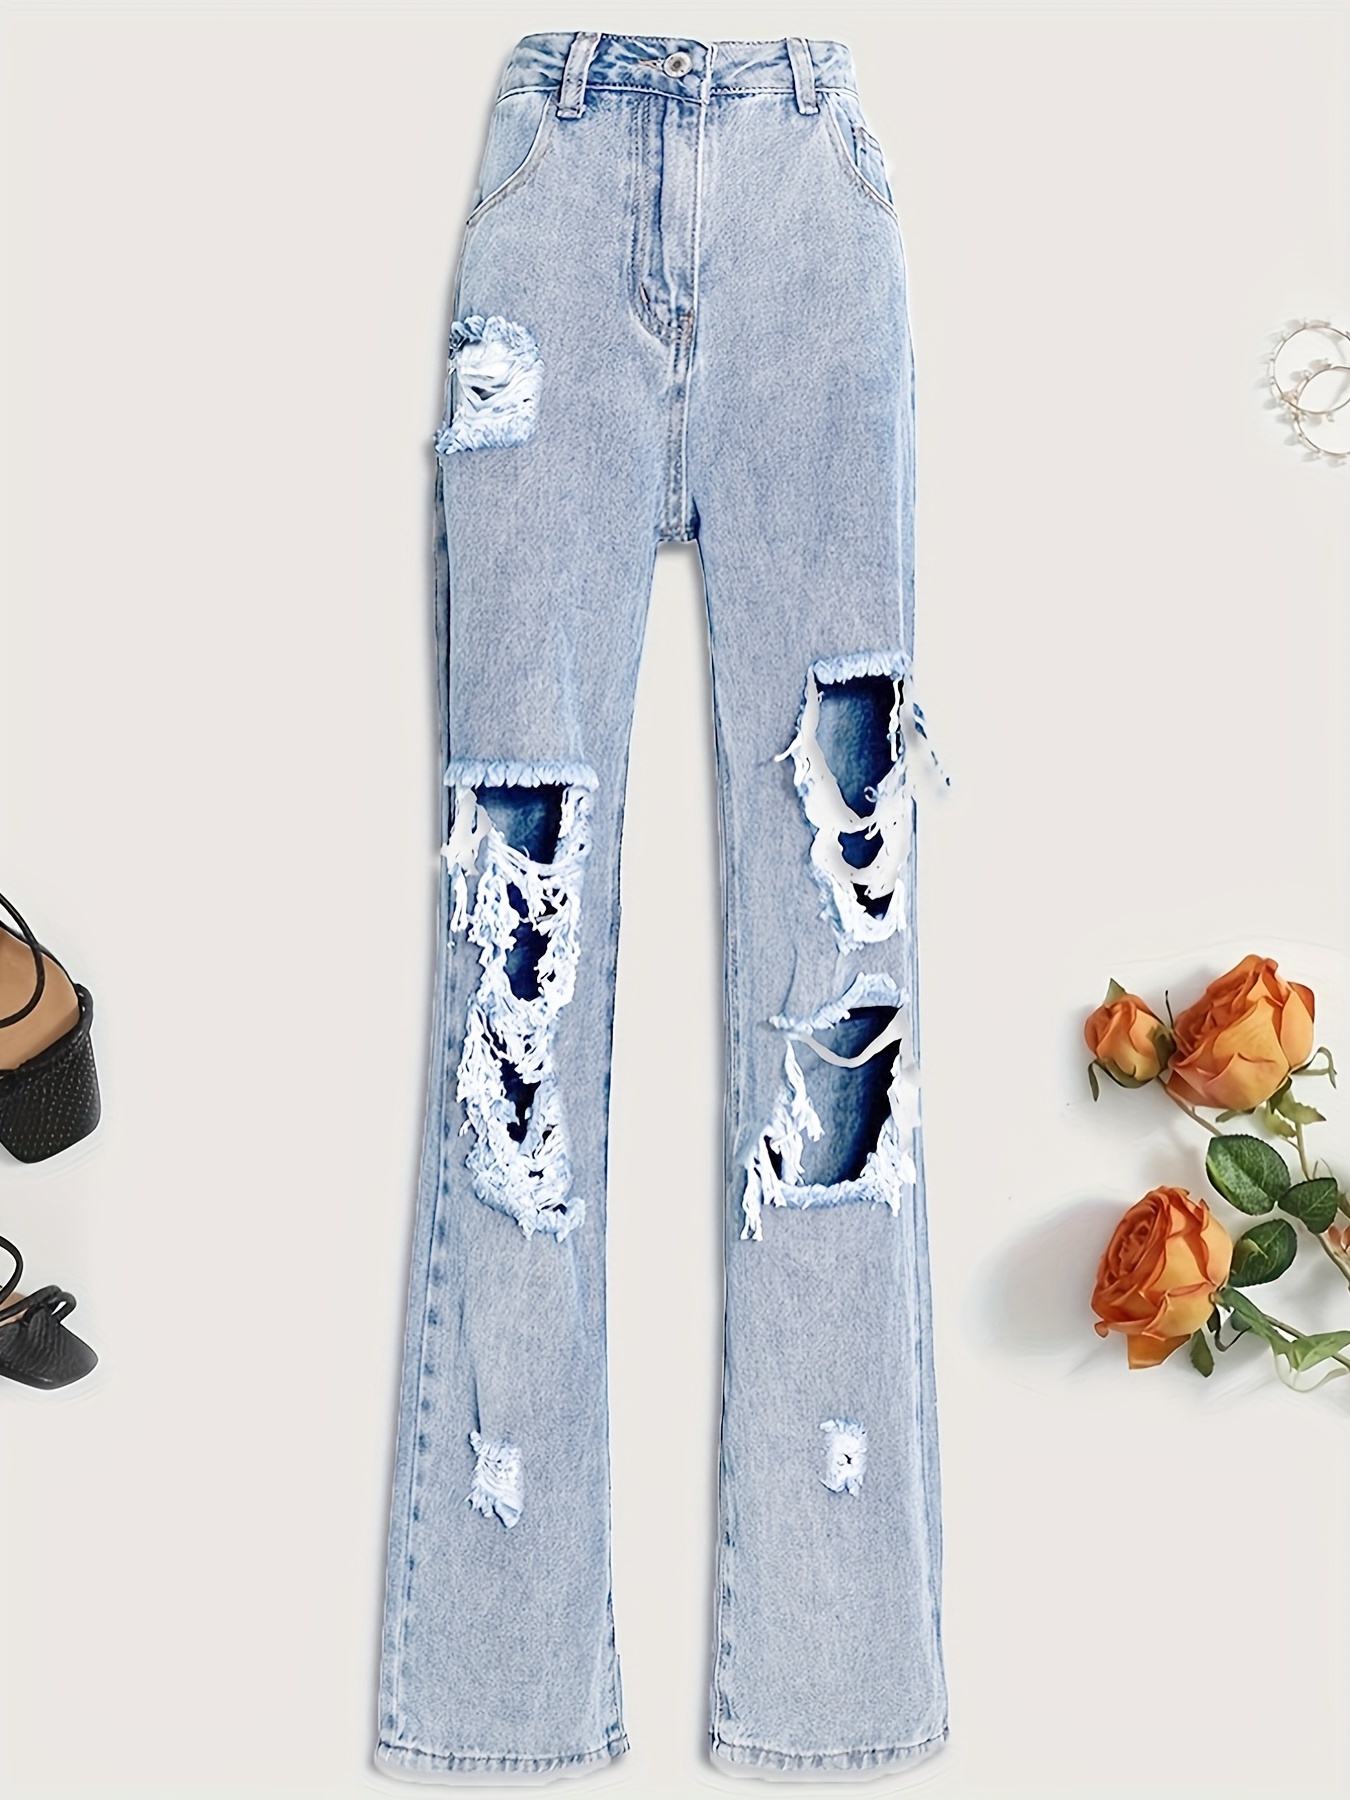 Blue Ripped Mom Jeans, pantalones de mezclilla de talle alto con cintura  alta y pierna recta con bolsillos oblicuos desgastados, jeans y ropa de  mujer